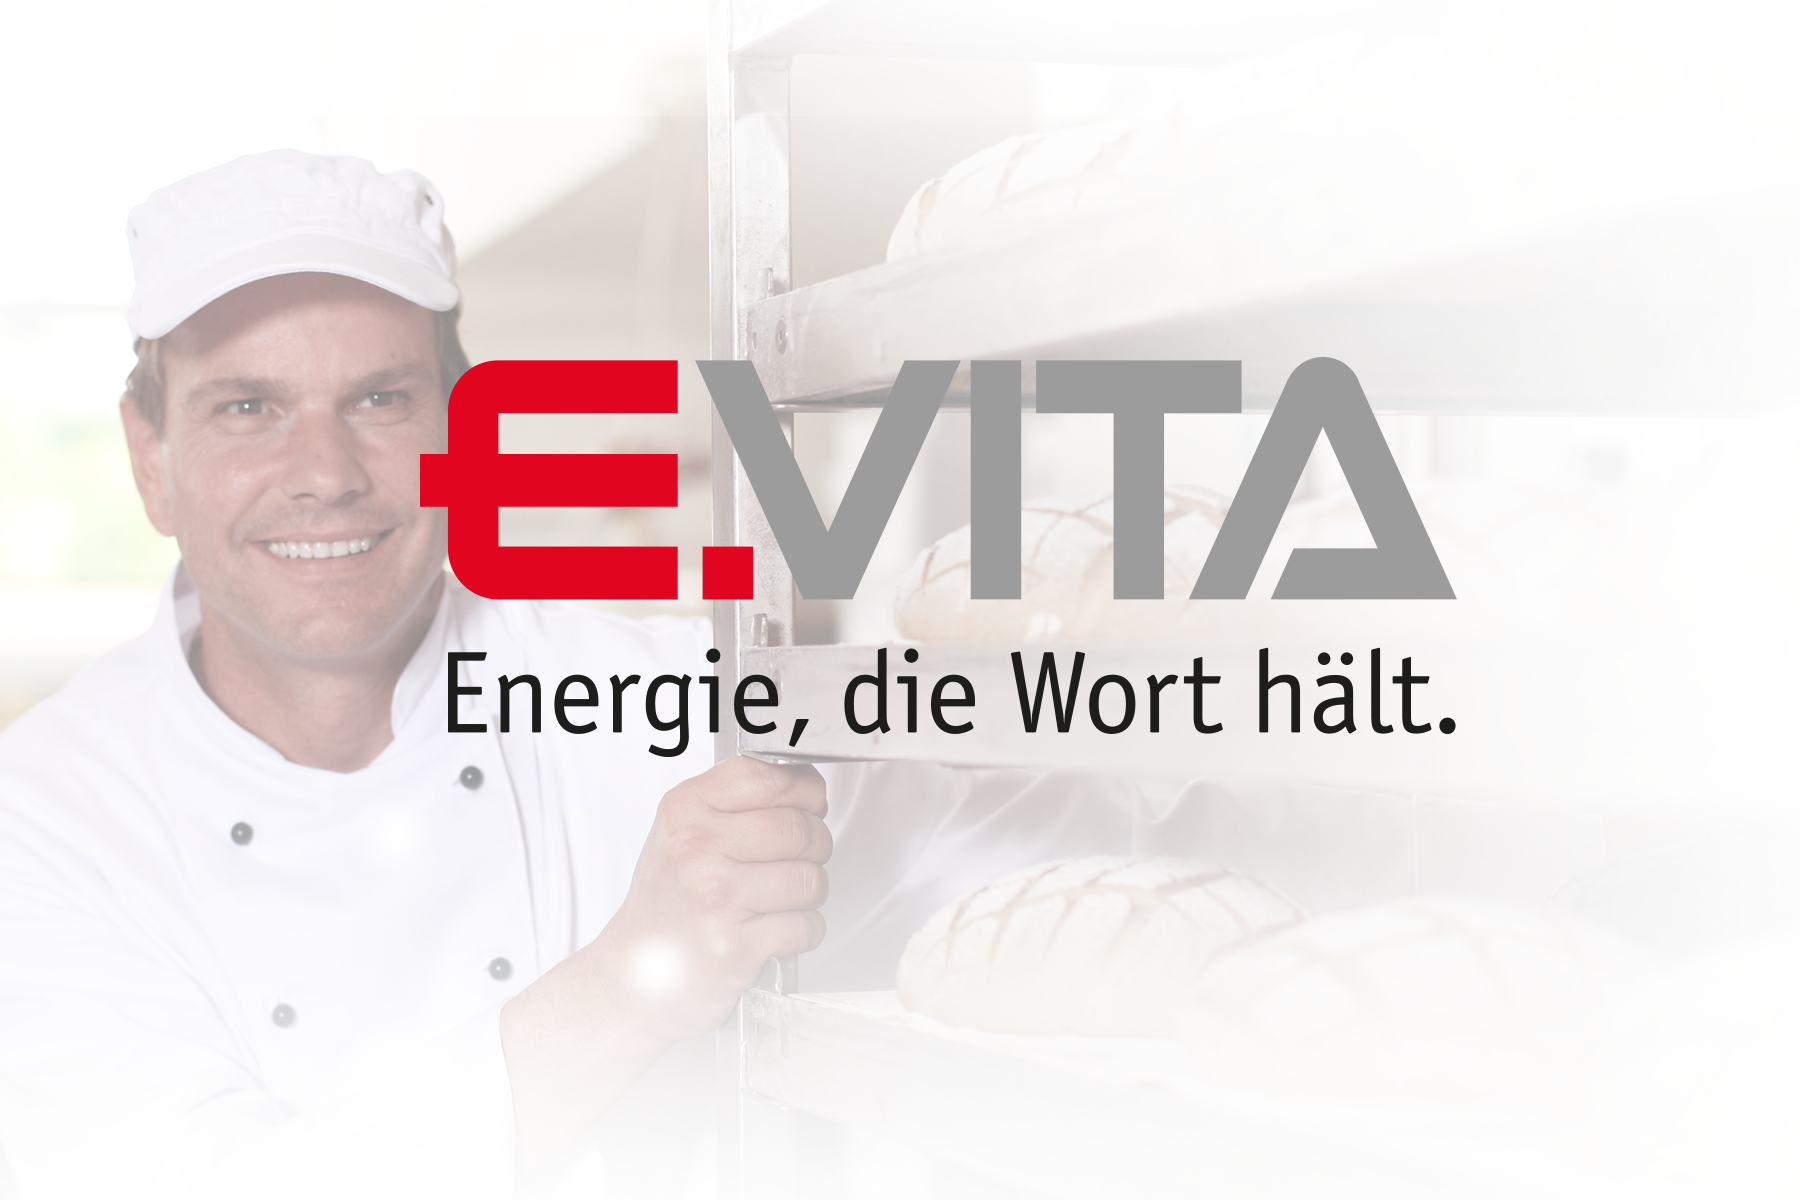 (c) Evita-energie.de